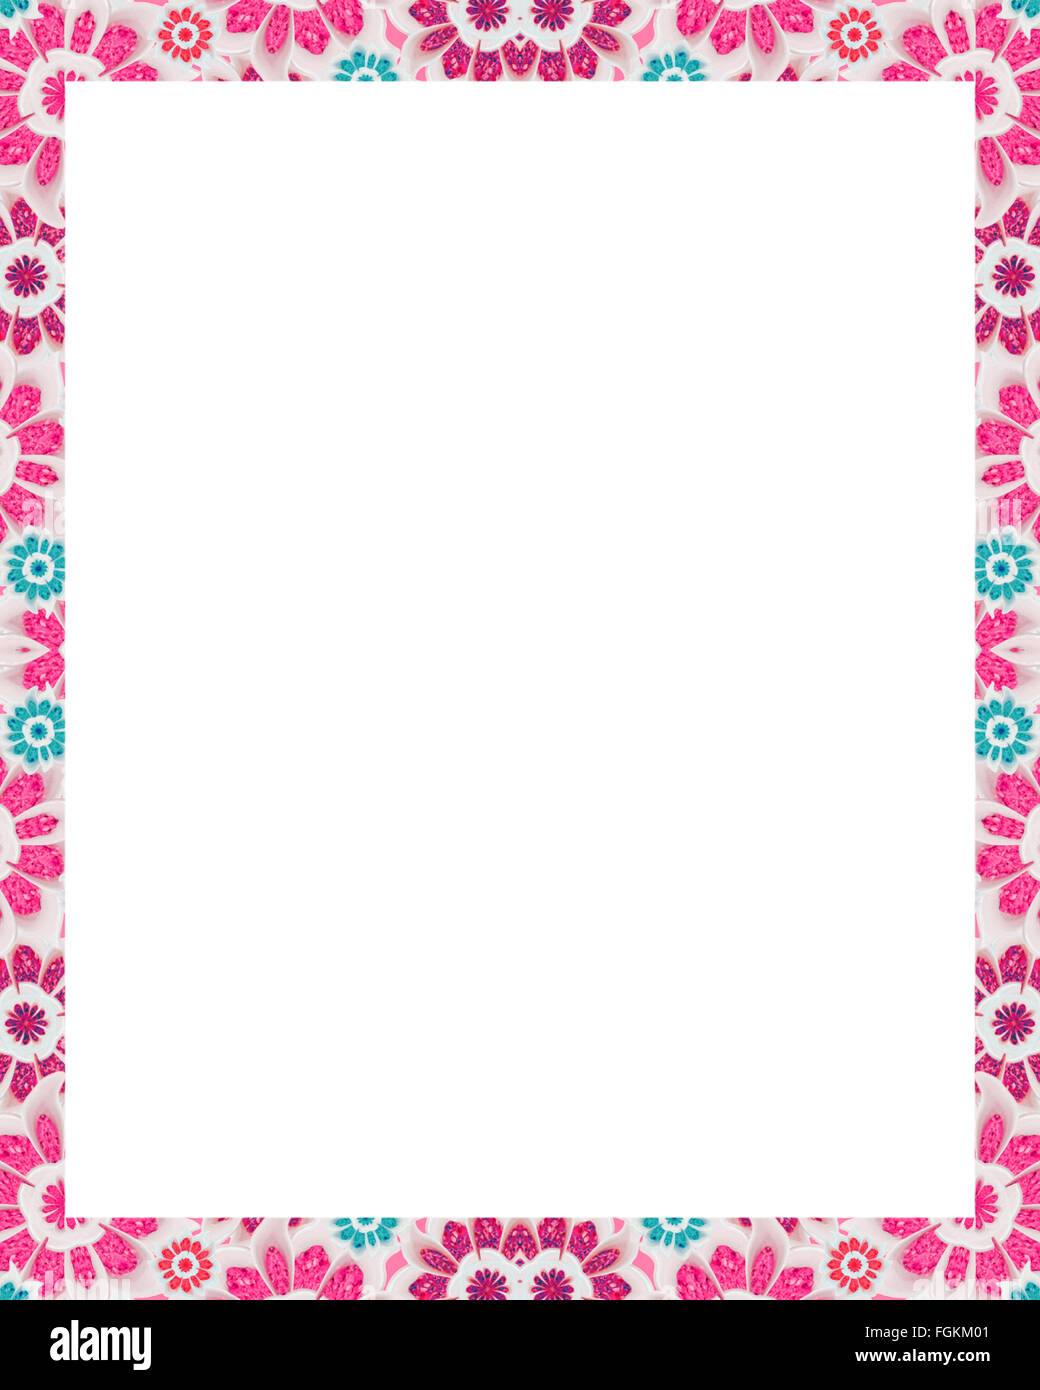 Weißen Hintergrund mit stilisierten Blumen Motiv Design Grenzen in rosa und blaugrünen Tönen. Stockfoto